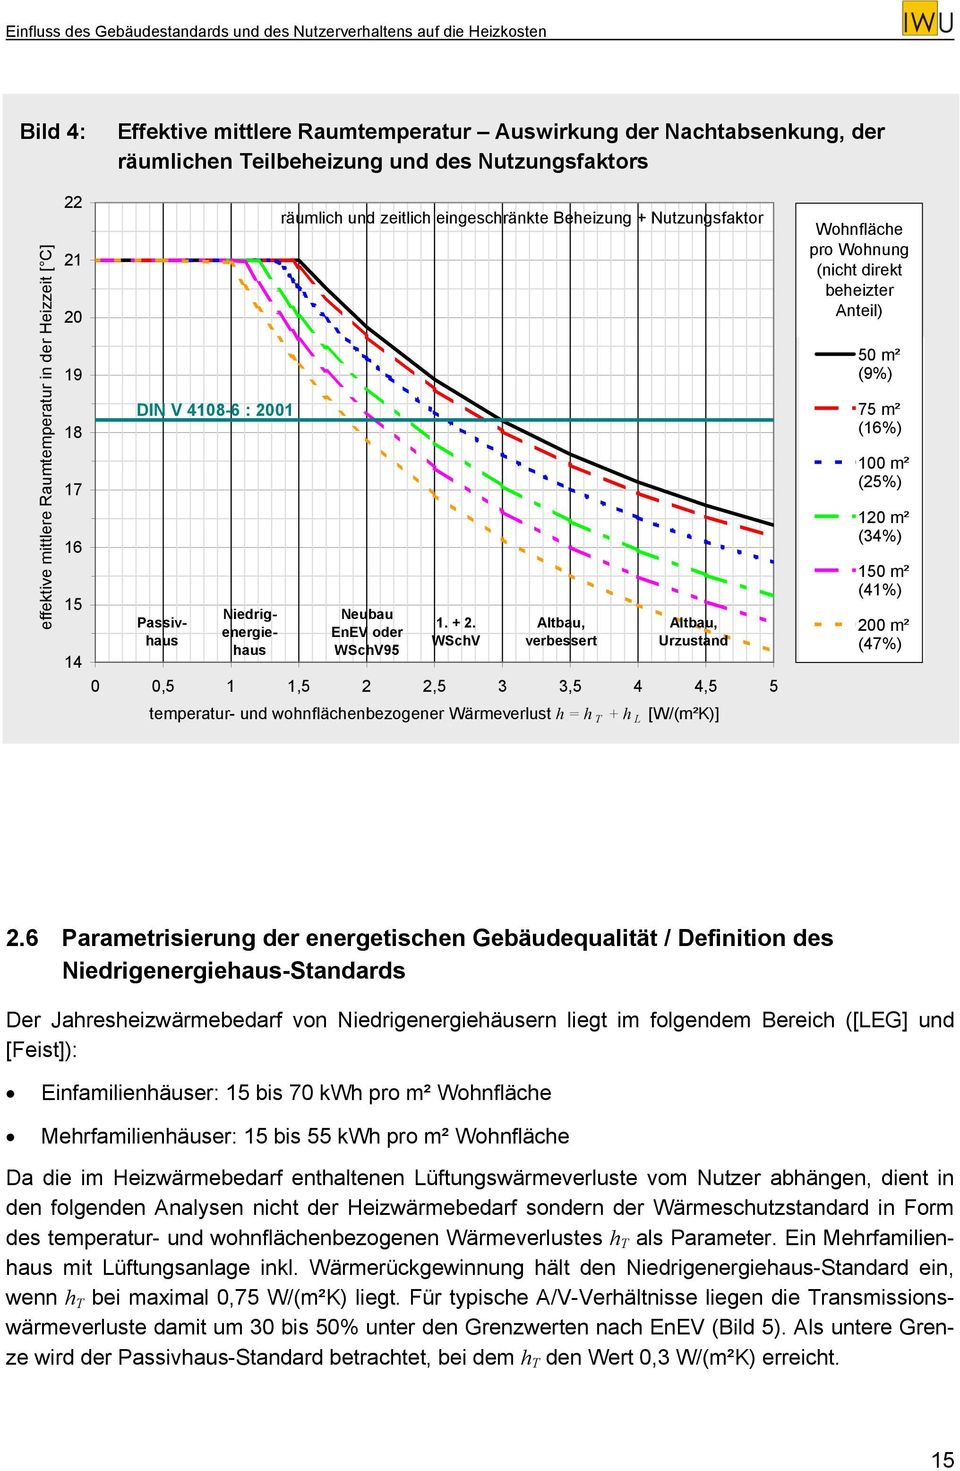 WSchV Altbau, verbessert Altbau, Urzustand 0 0,5 1 1,5 2 2,5 3 3,5 4 4,5 5 temperatur- und wohnflächenbezogener Wärmeverlust h = h T + h L [W/(m²K)] Wohnfläche pro Wohnung (nicht direkt beheizter